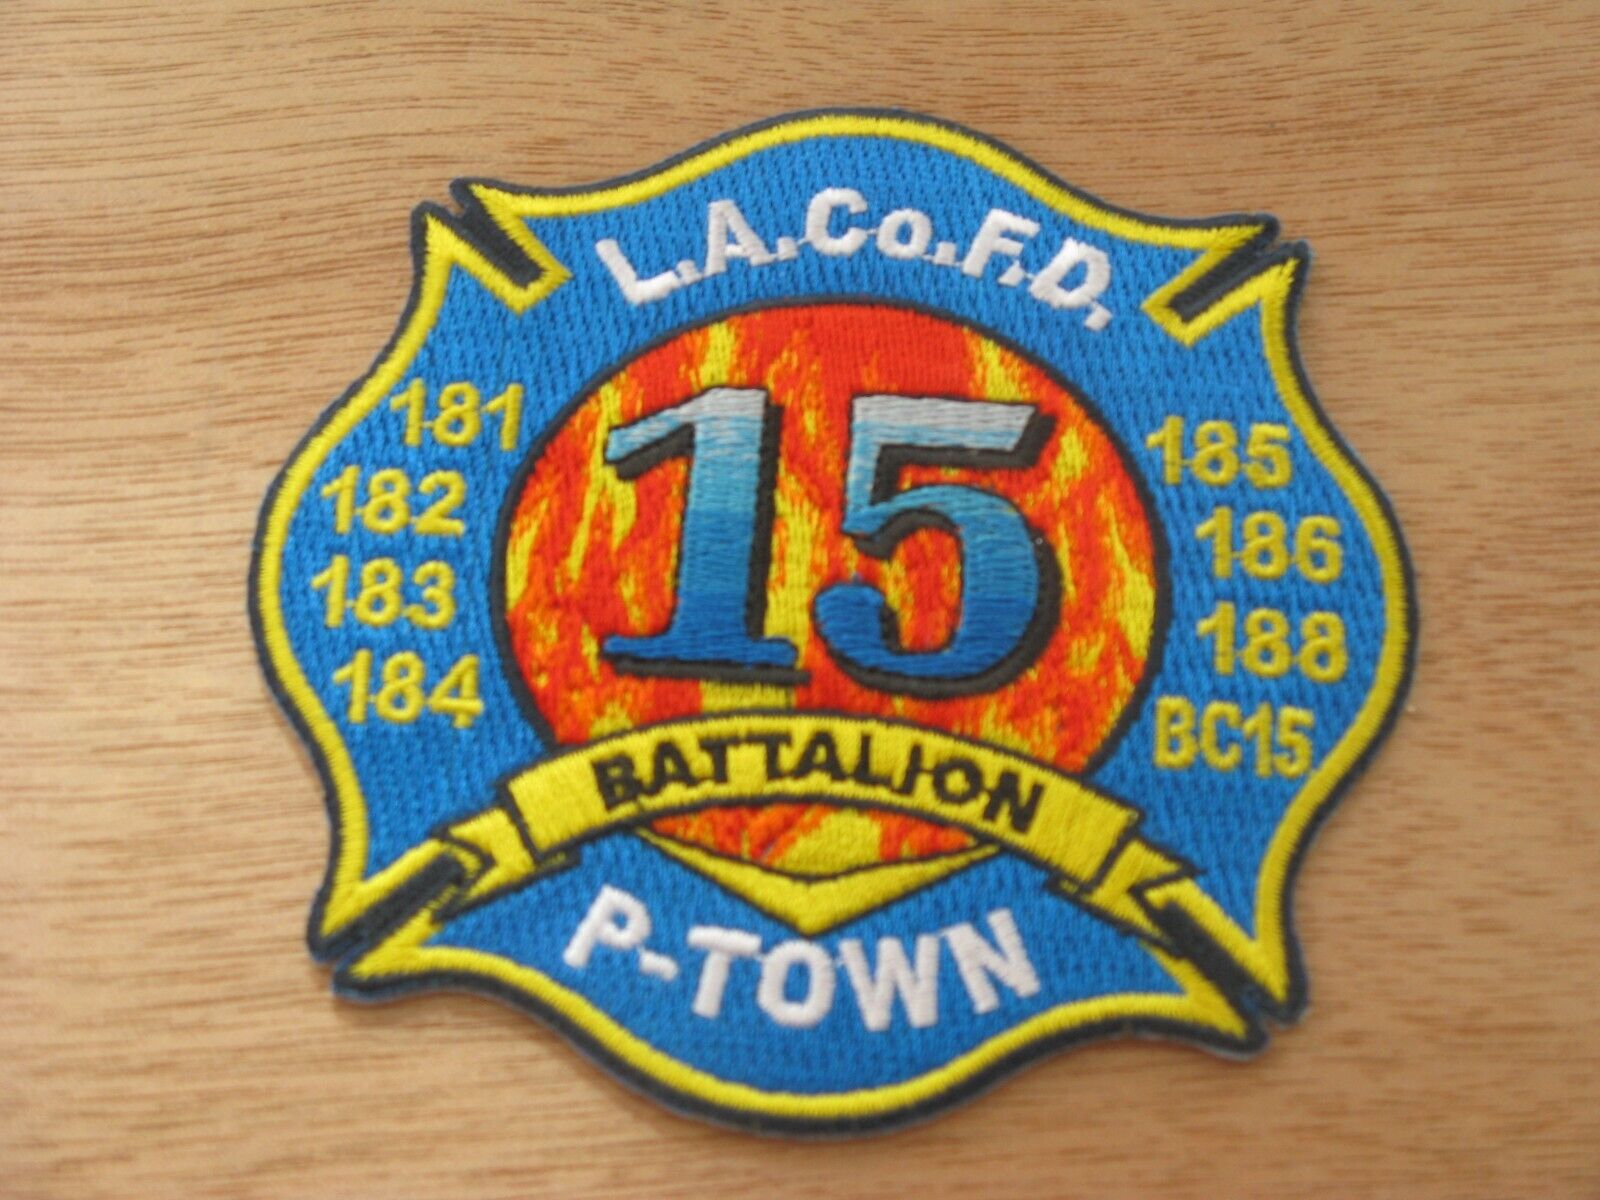 LA County Battalion 15 P Town Light Blue Fire Patch